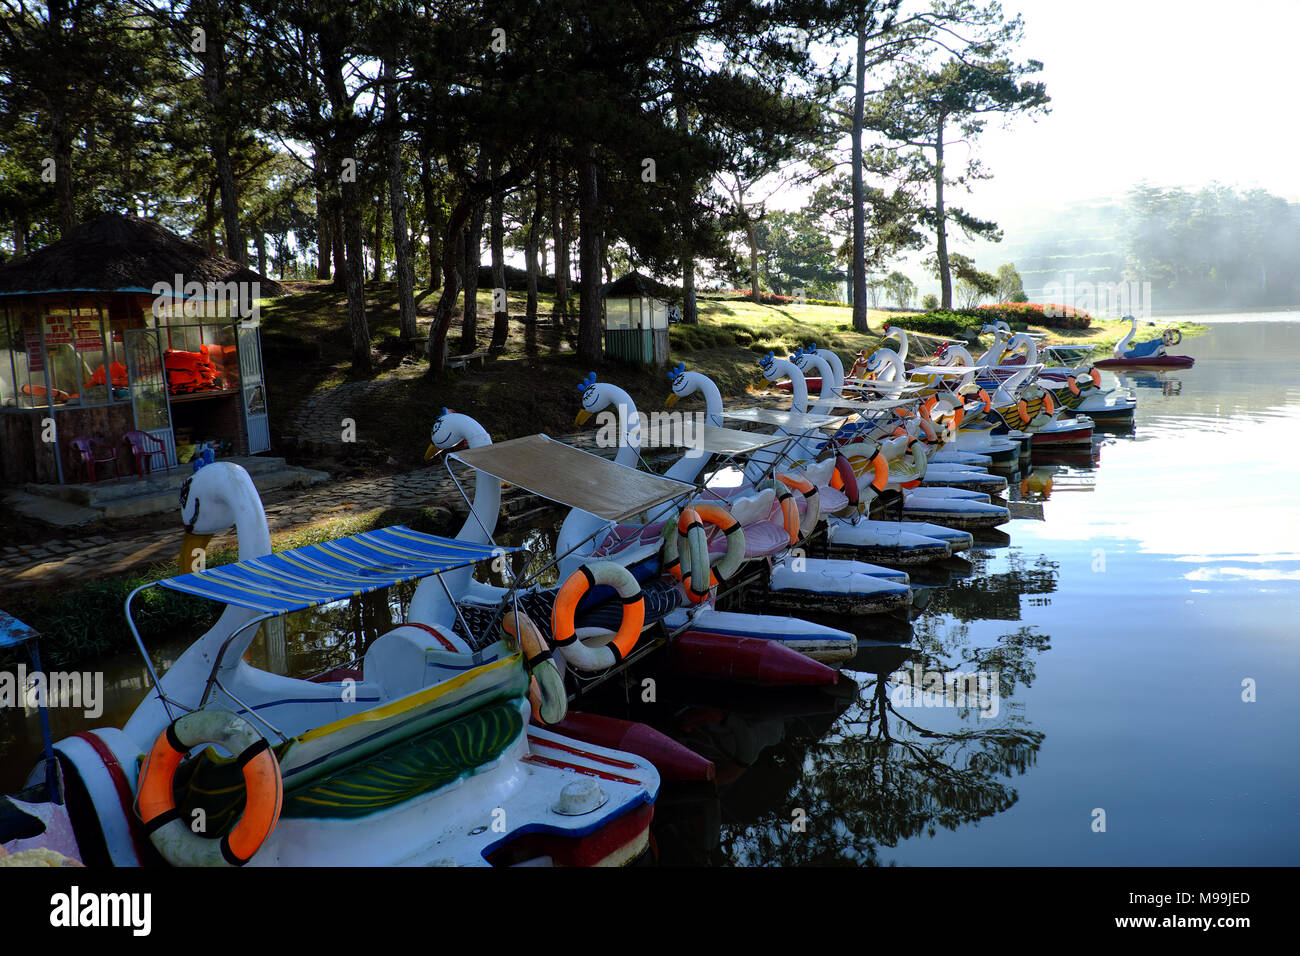 Gruppe von Ente Boot, Fahrzeug- und auf dem Wasser für Tourismus entspannen, reflektieren über Wasser, Ziel für Reisen Da Lat, Vietnam, See in einem Pinienwald Stockfoto